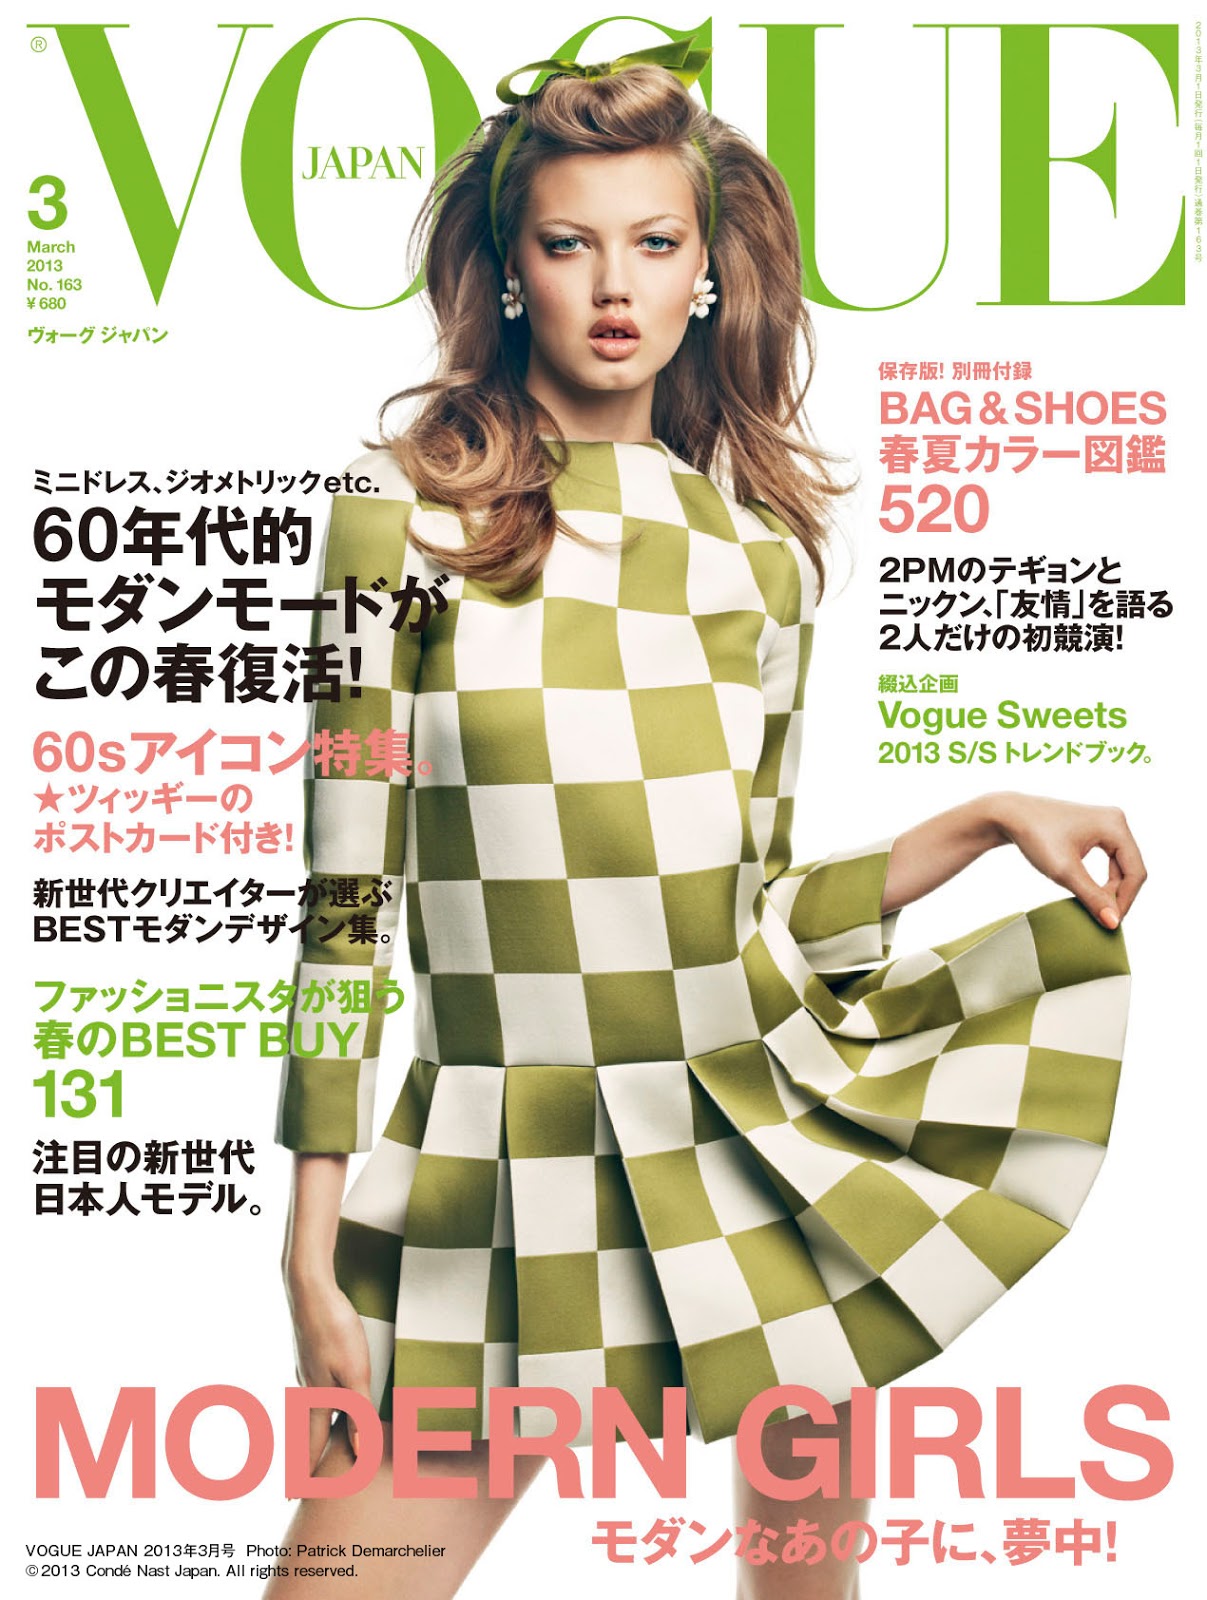 Vogue's Covers: Vogue Japan